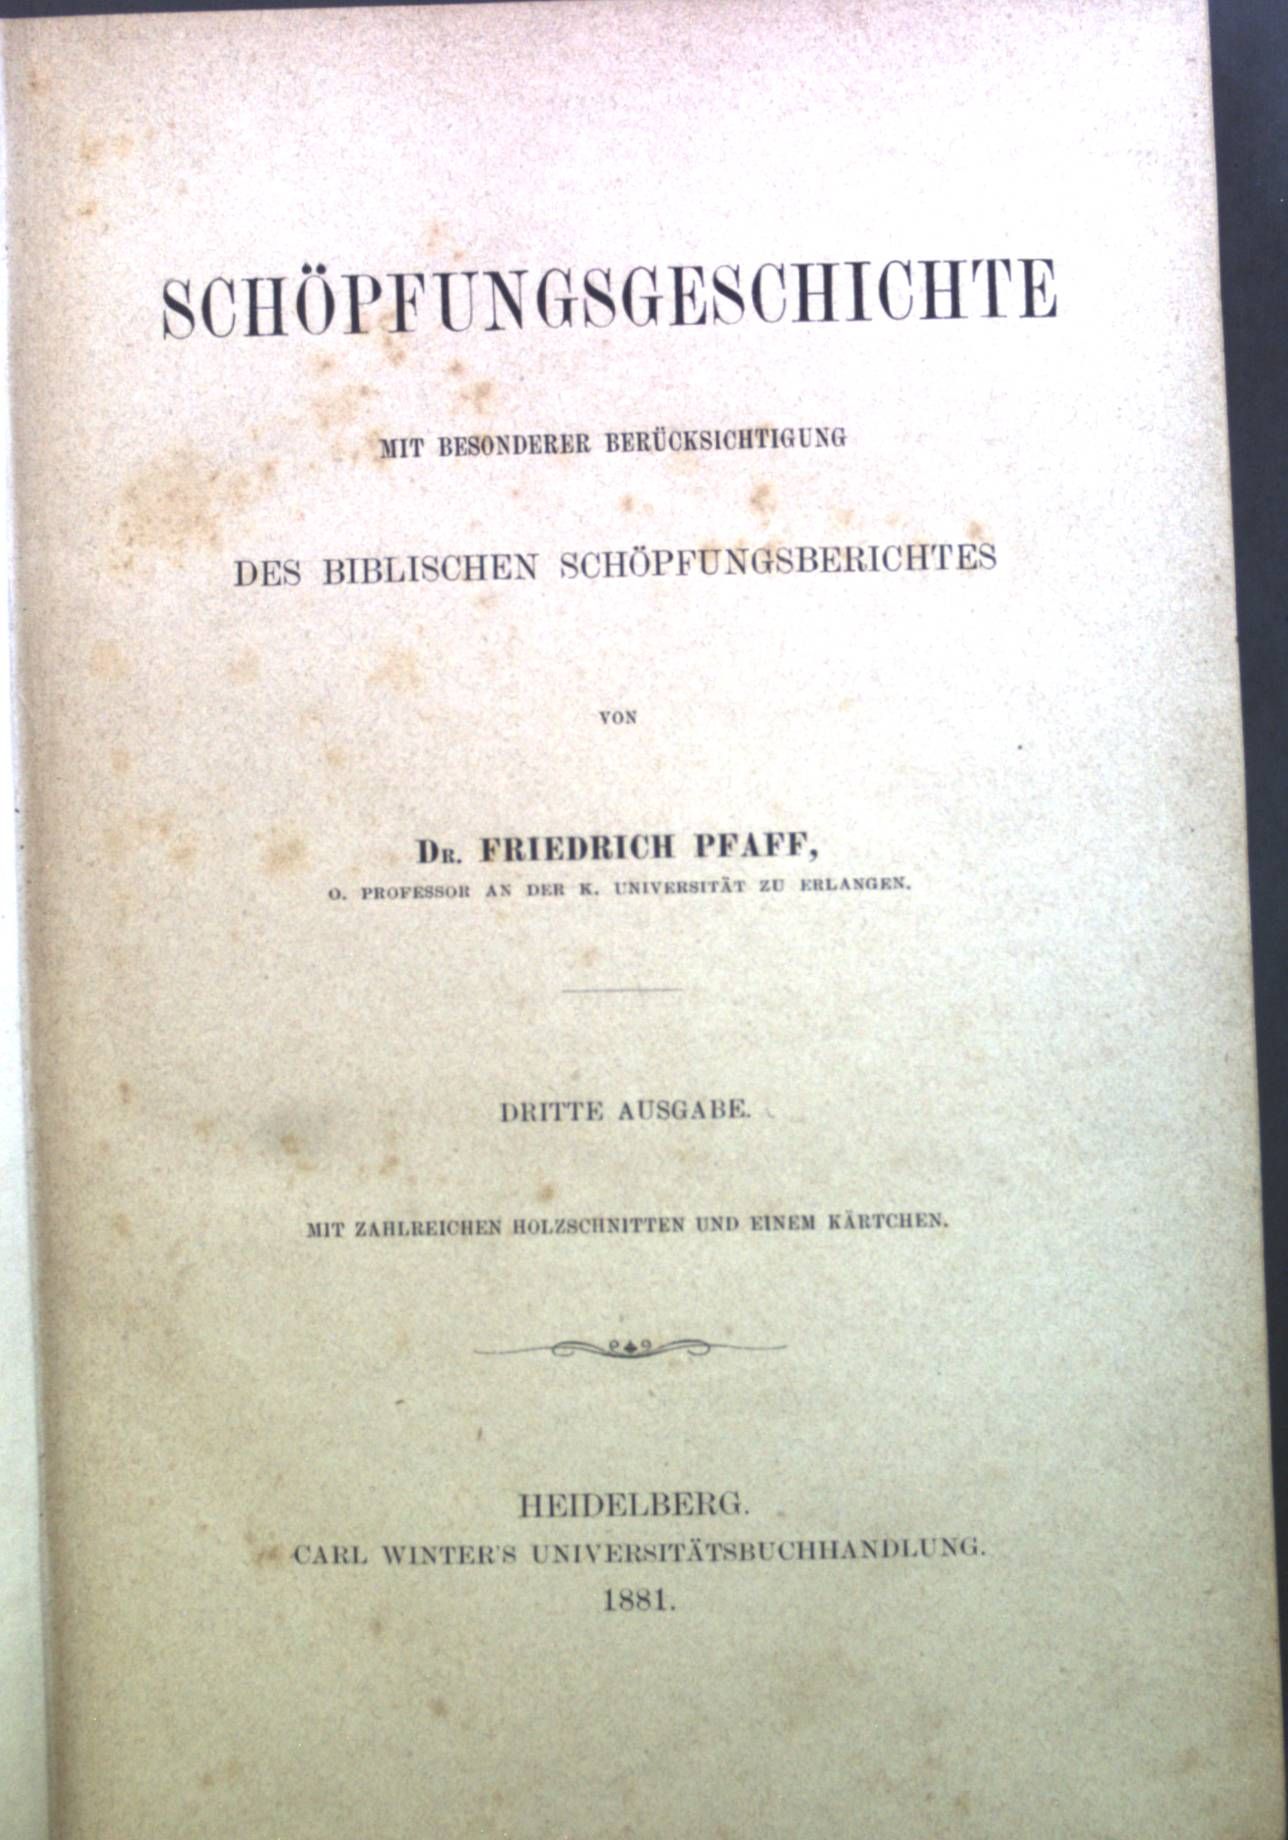 Schöpfungsgeschichte: Mit besonderer Berücksichtigung des biblischen Schöpfungsberichtes. - Pfaff, Friedrich